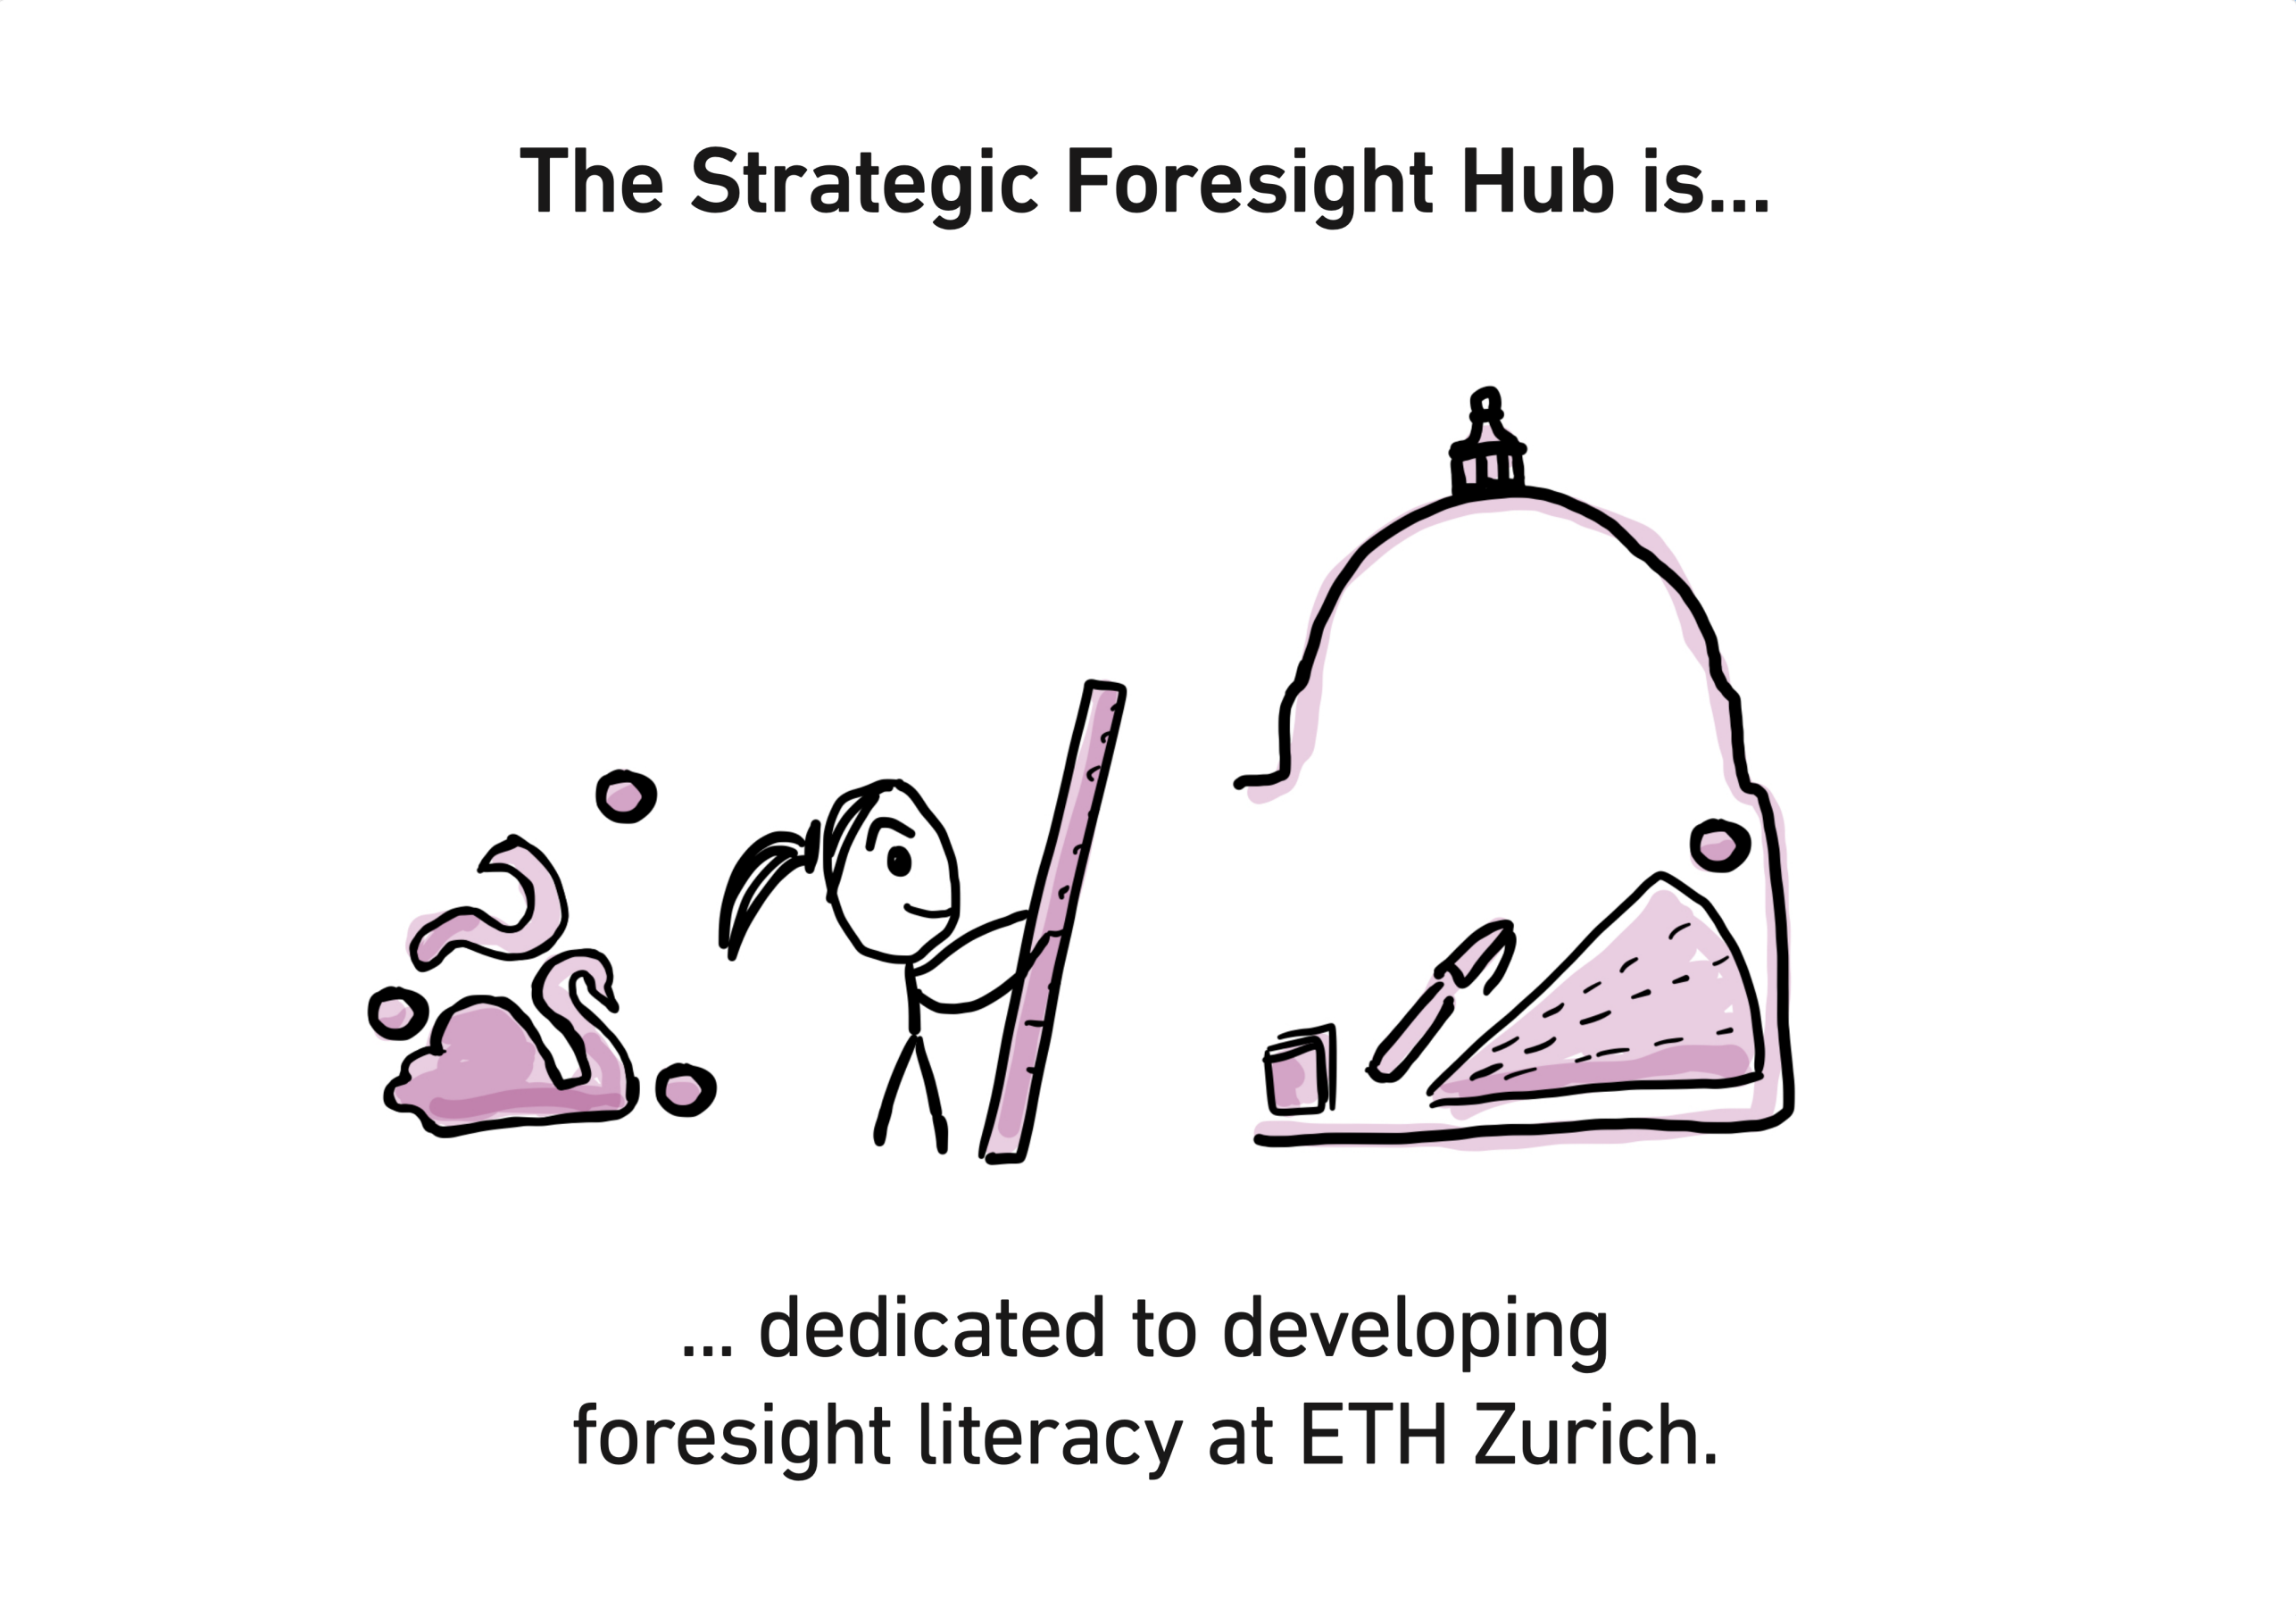 Image: ETH Zurich